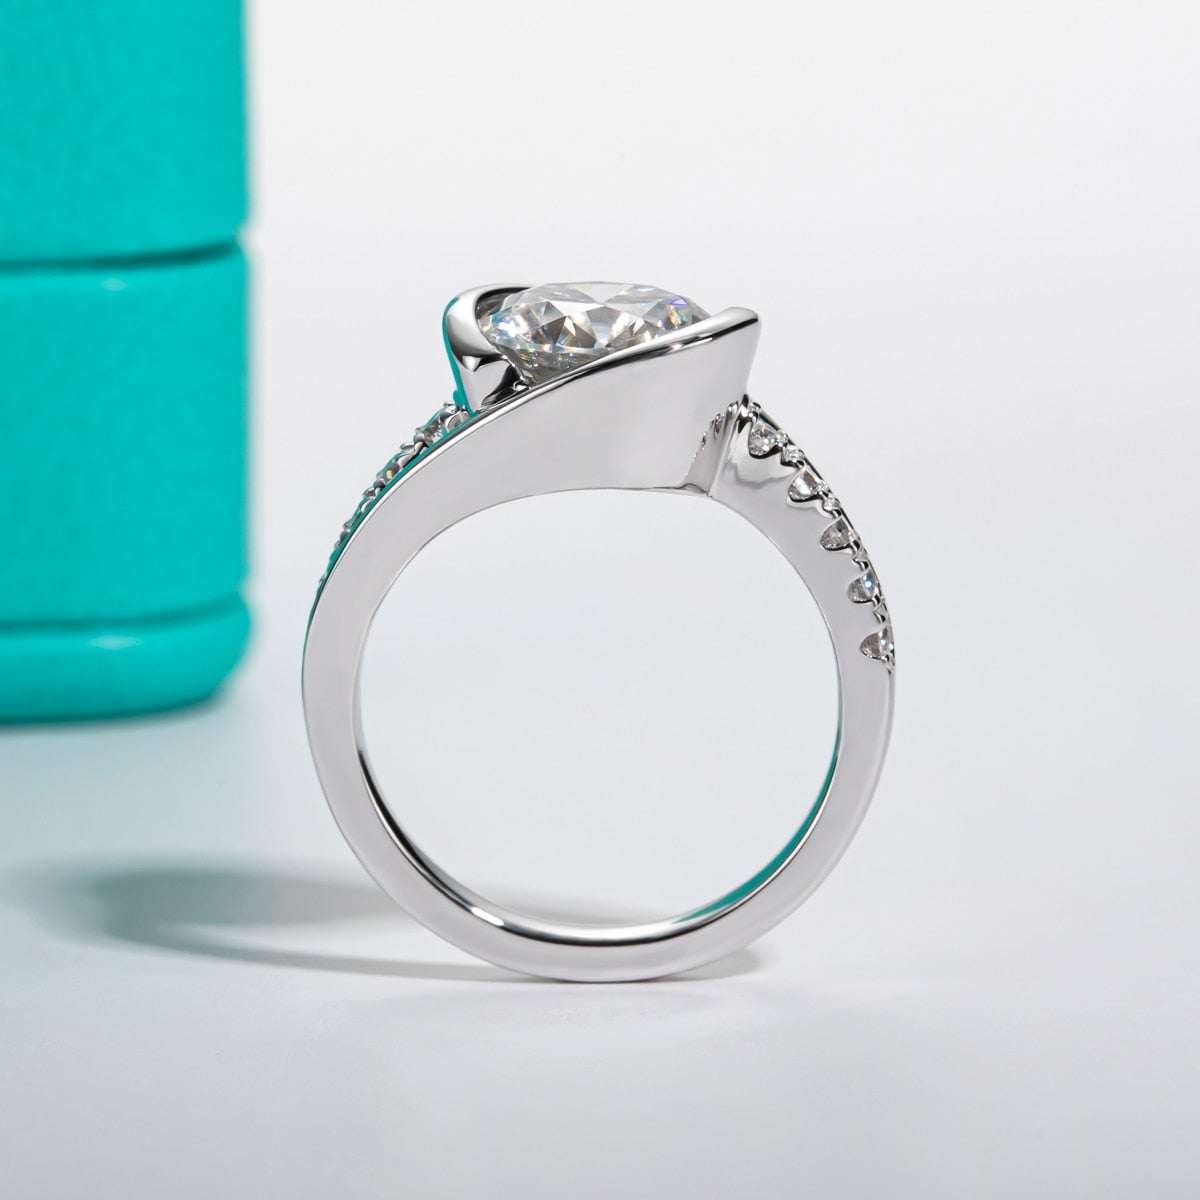 Sterling Silver Moissanite Diamond Engagement Ring